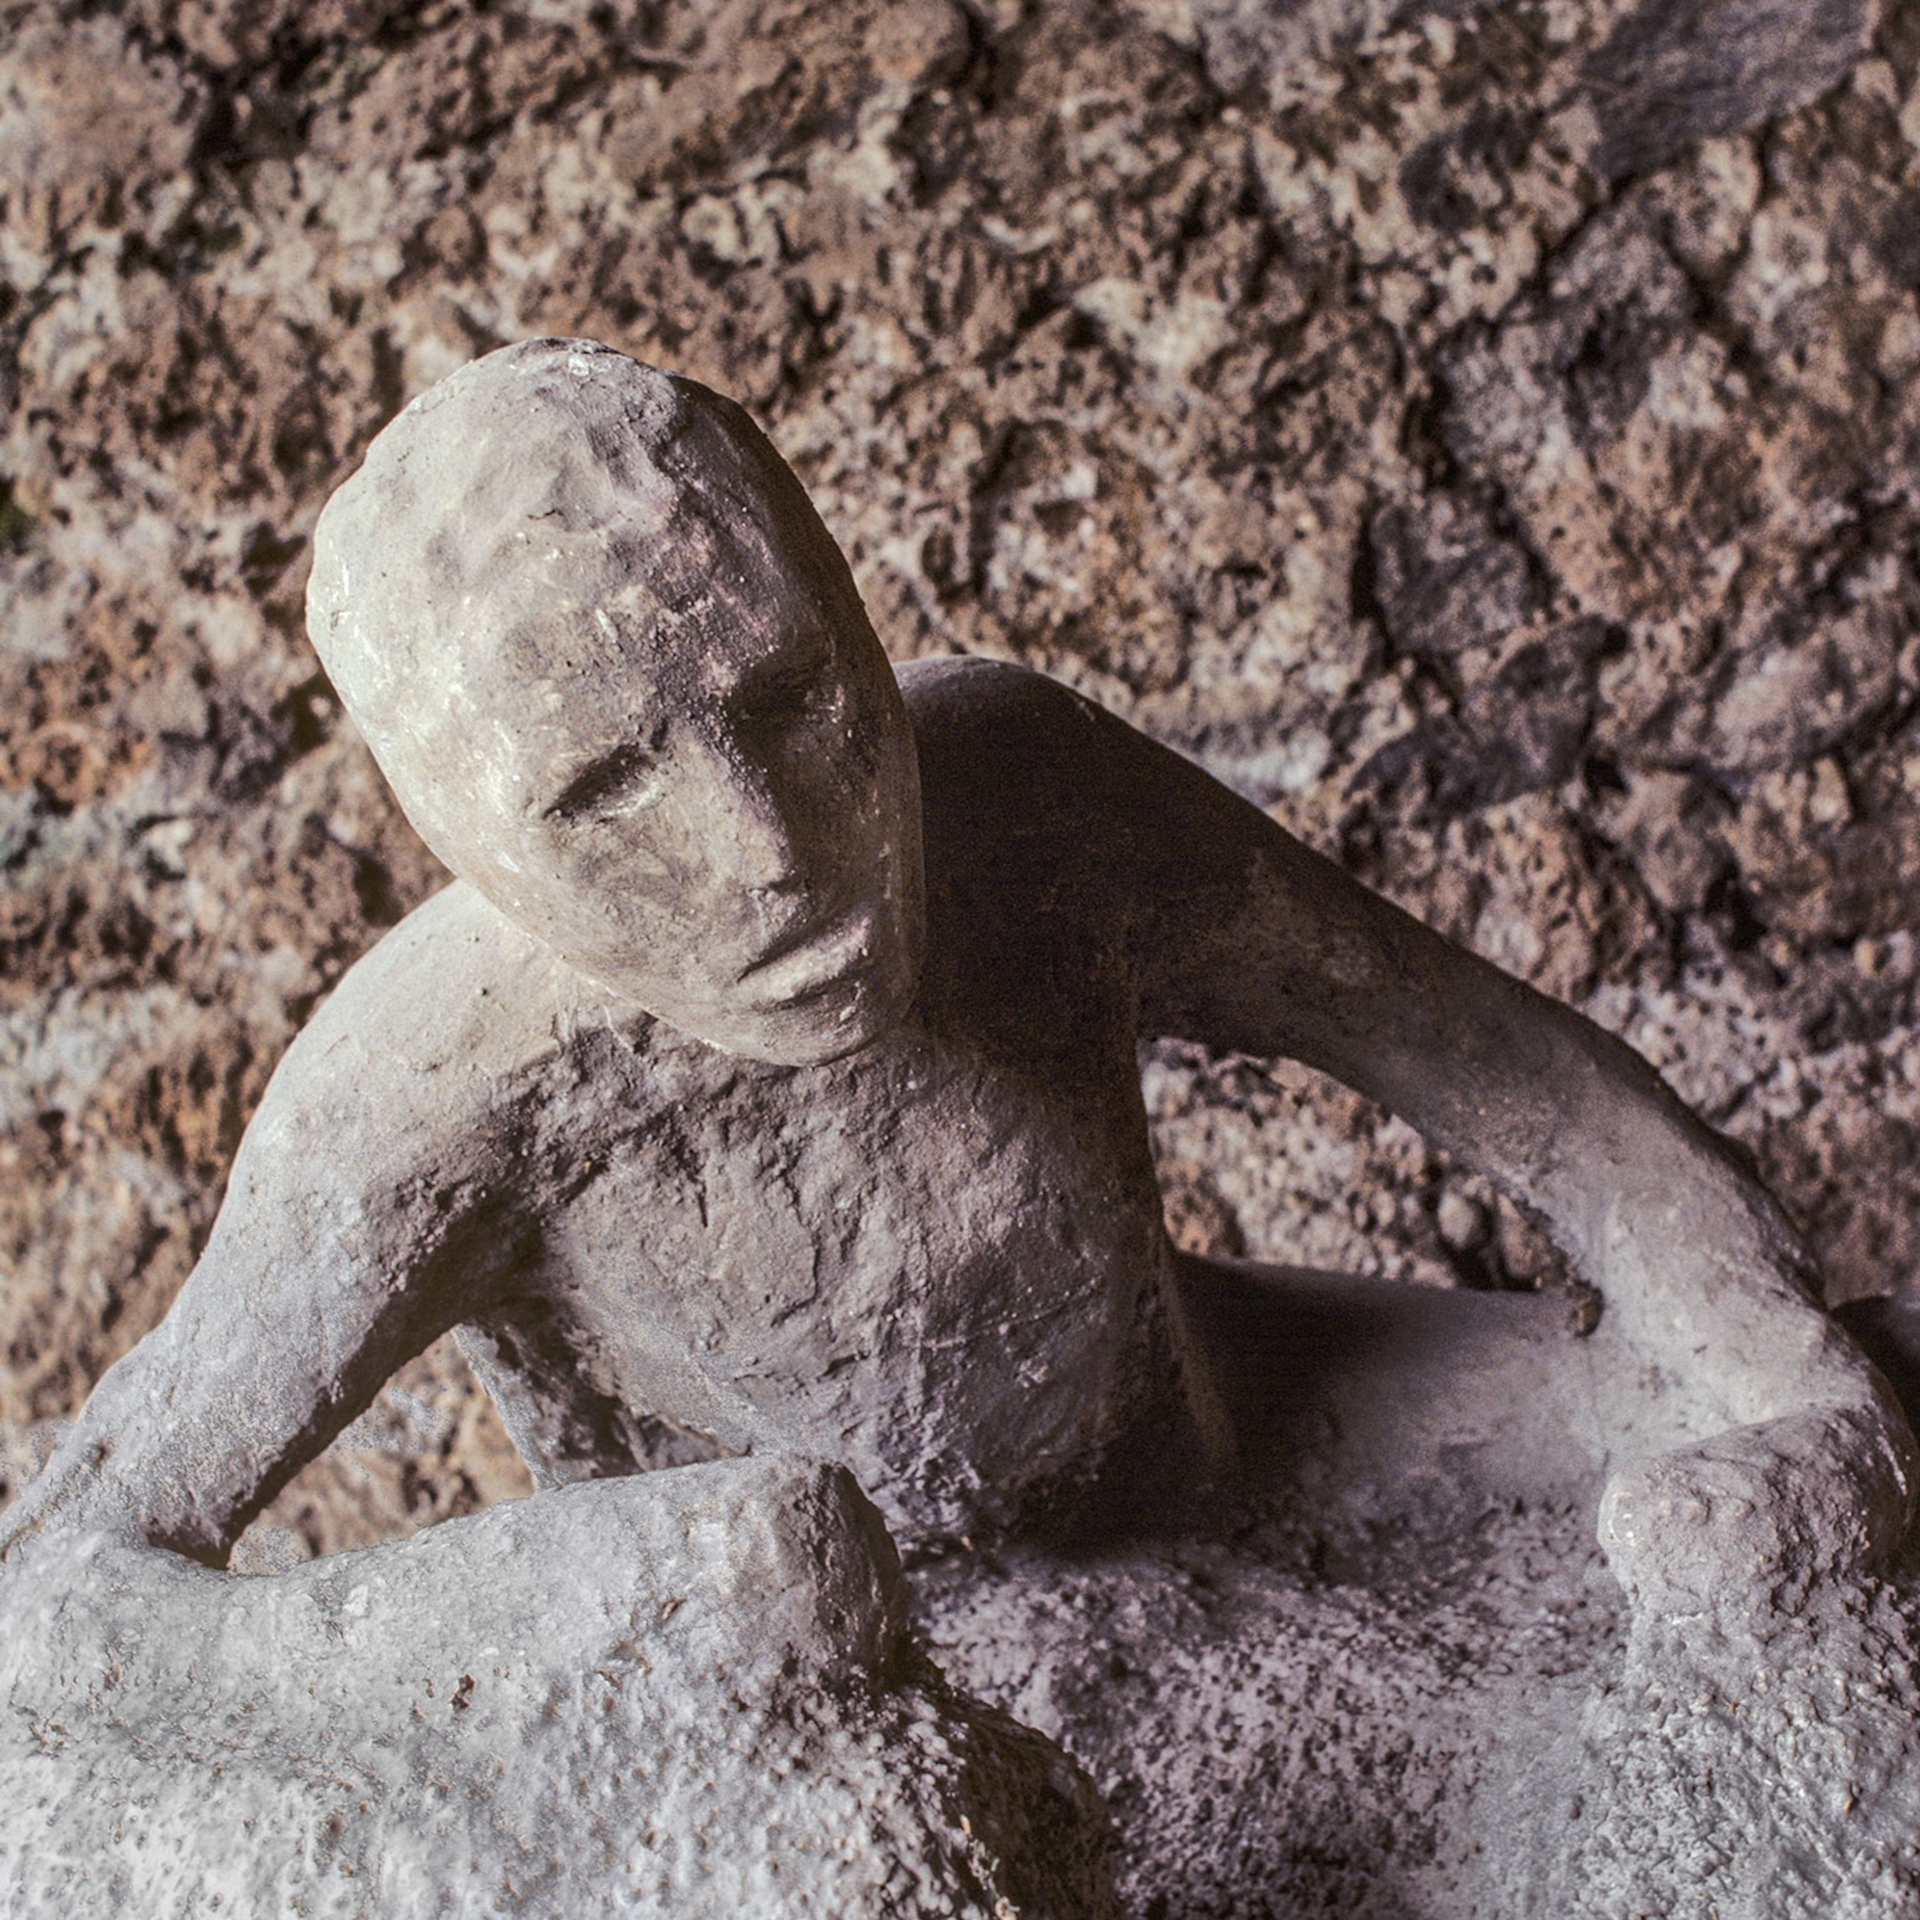 考古學家已經找到了上千名在維蘇威火山噴發中喪生的龐貝城居民遺骸，而由這些火山灰保存下來的身軀翻鑄成的石膏模型已然成為這場古代天災的標誌形象。PHOTOGRAPH BY DAVID HISER, NAT GEO IMAGE COLLECTION